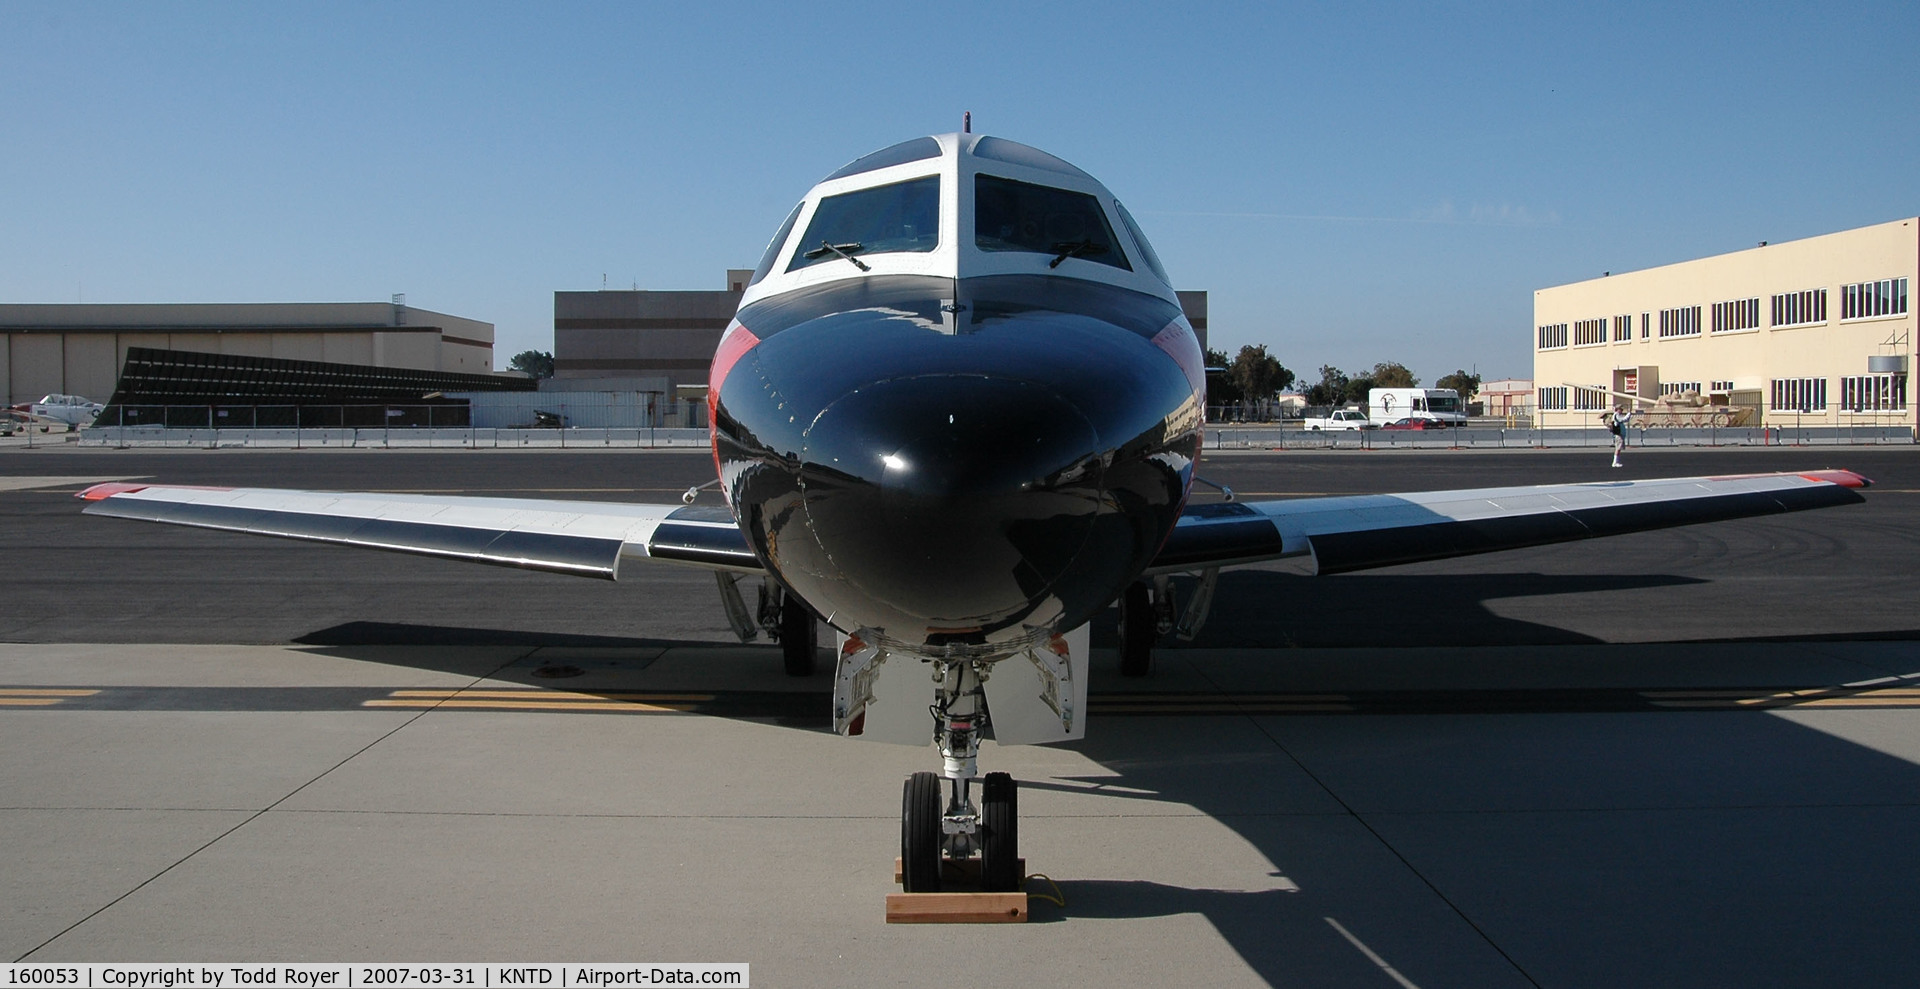 160053, North American Rockwell CT-39G (N-265) Sabreliner C/N 306-104, Point Mugu Airshow 2007